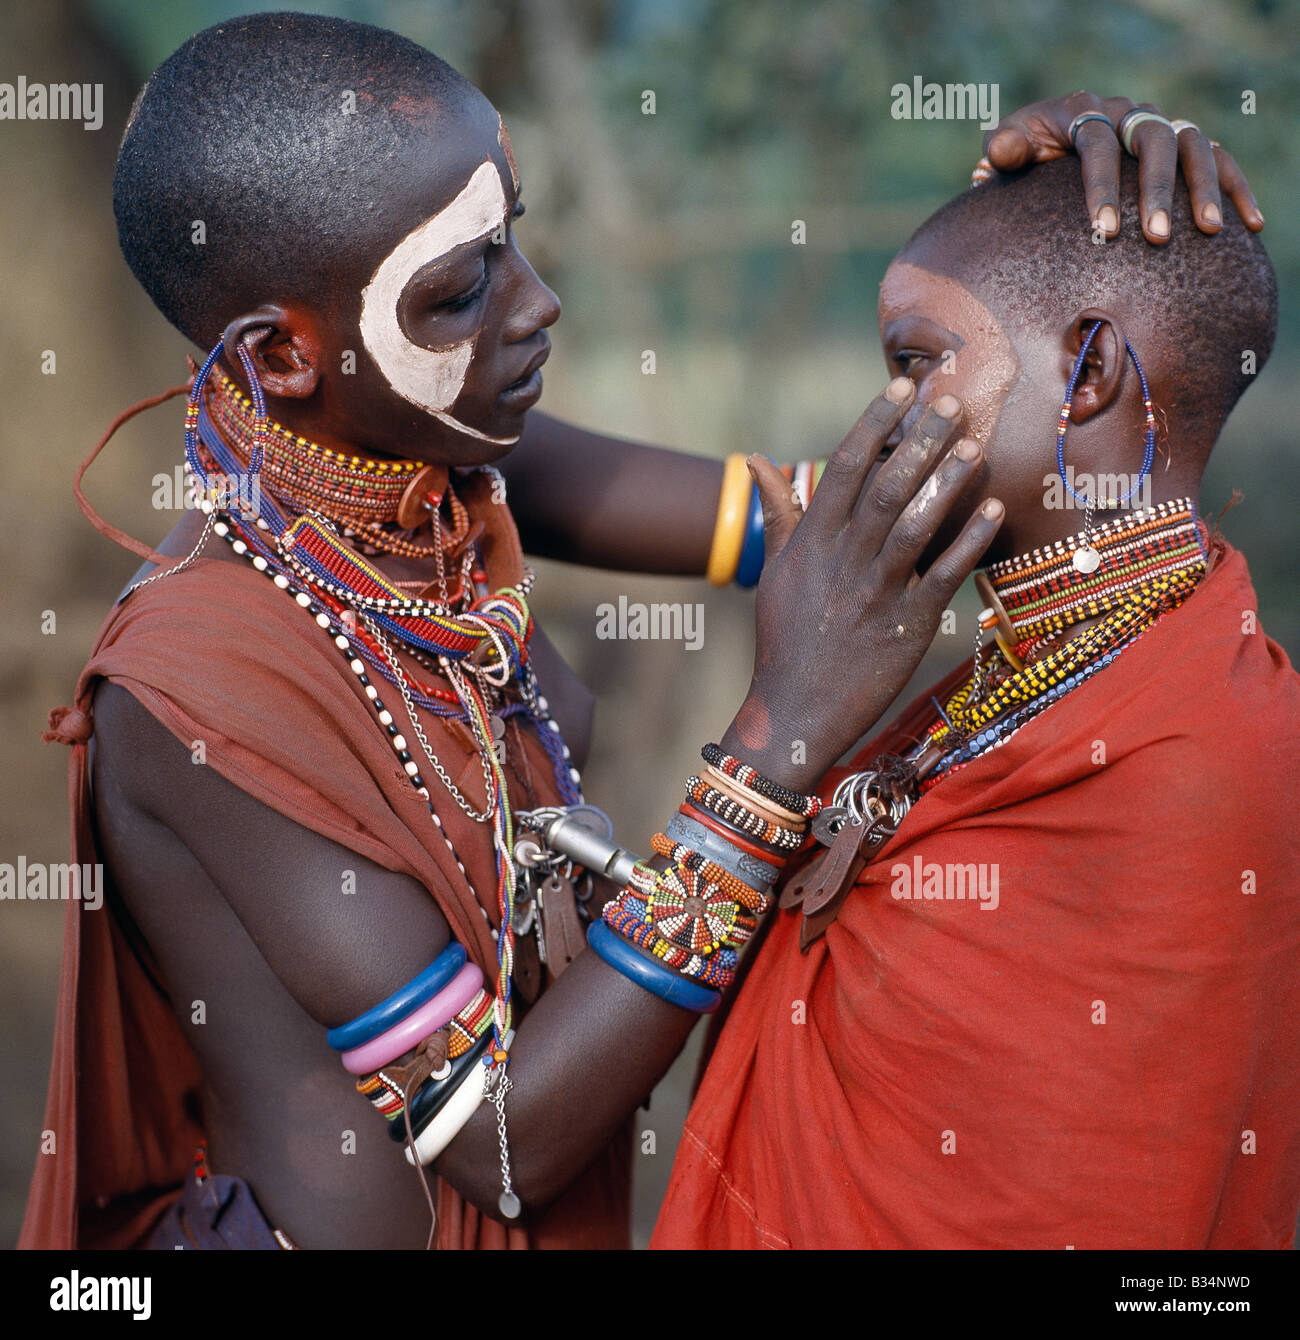 Kenya, Trans-Mara, Lolgorien. Les jeunes filles Maasai décorer leurs visages à l'ocre et d'argile dans la préparation d'une danse. Banque D'Images